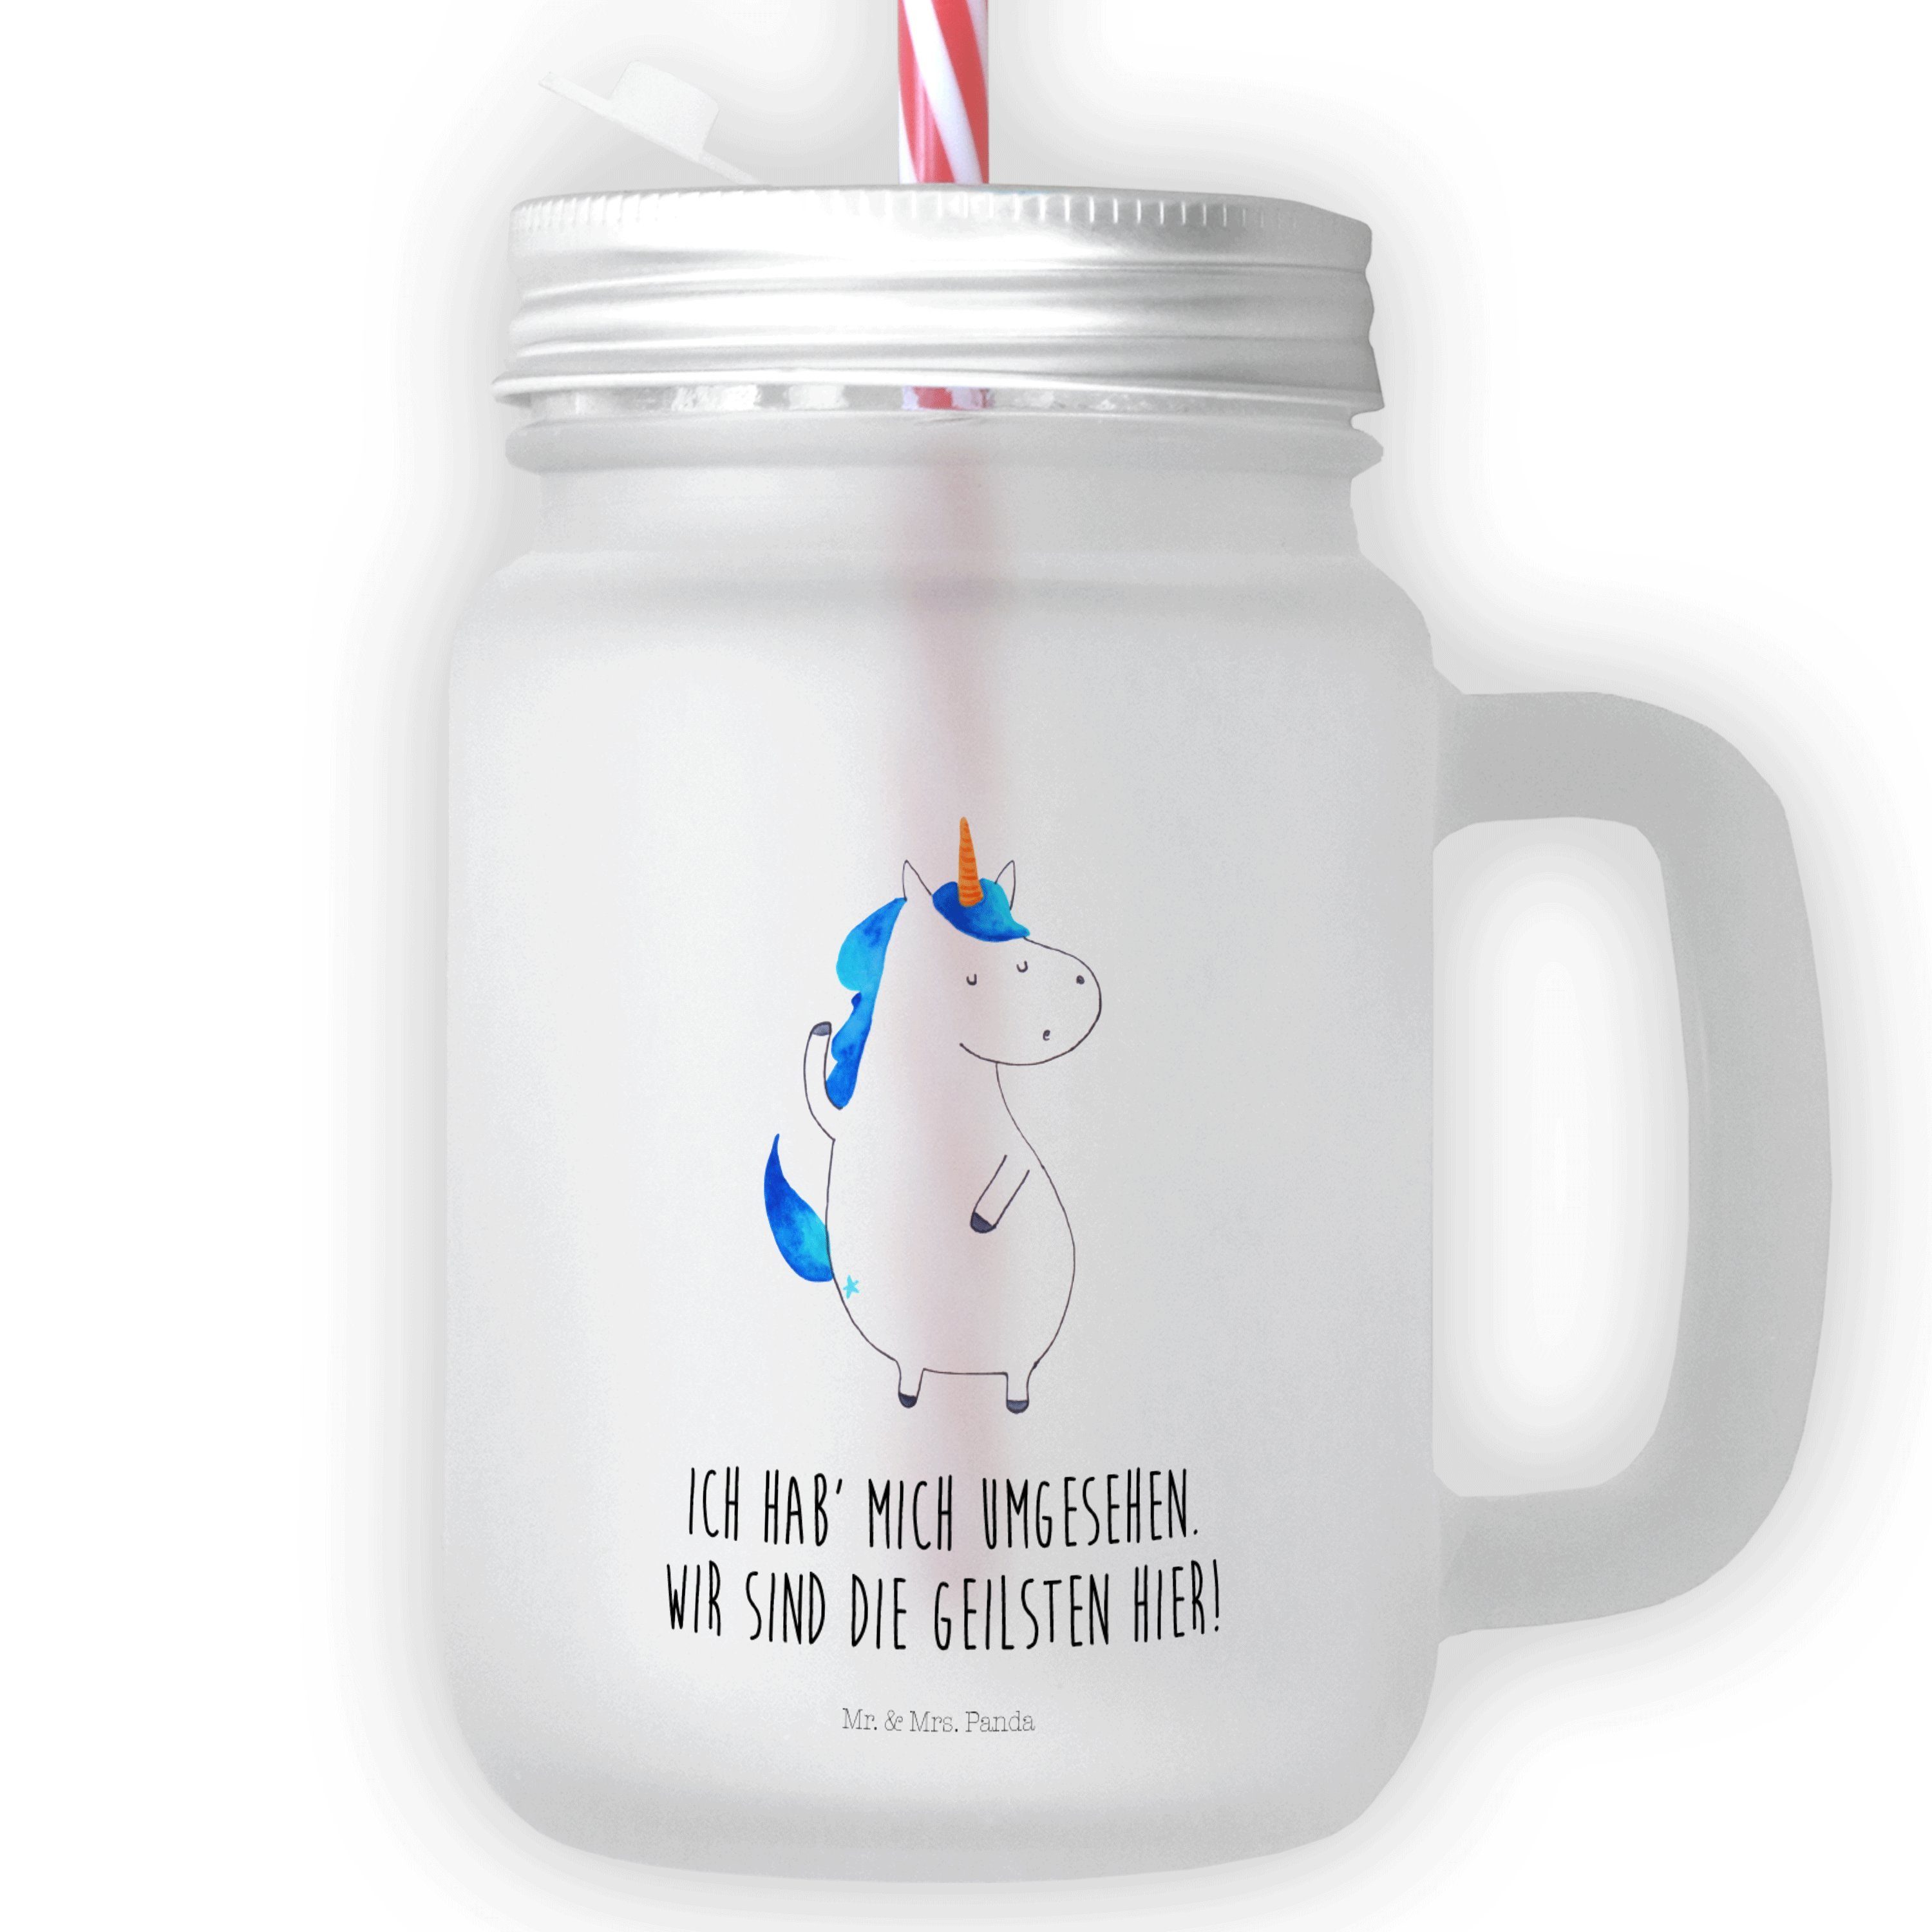 Super günstig & neu! Mr. & Mrs. Panda Mason, Geschenk, Transparent Glas, Glas Glas - Unicorn, - Einhorn Strohhalm Mann Premium